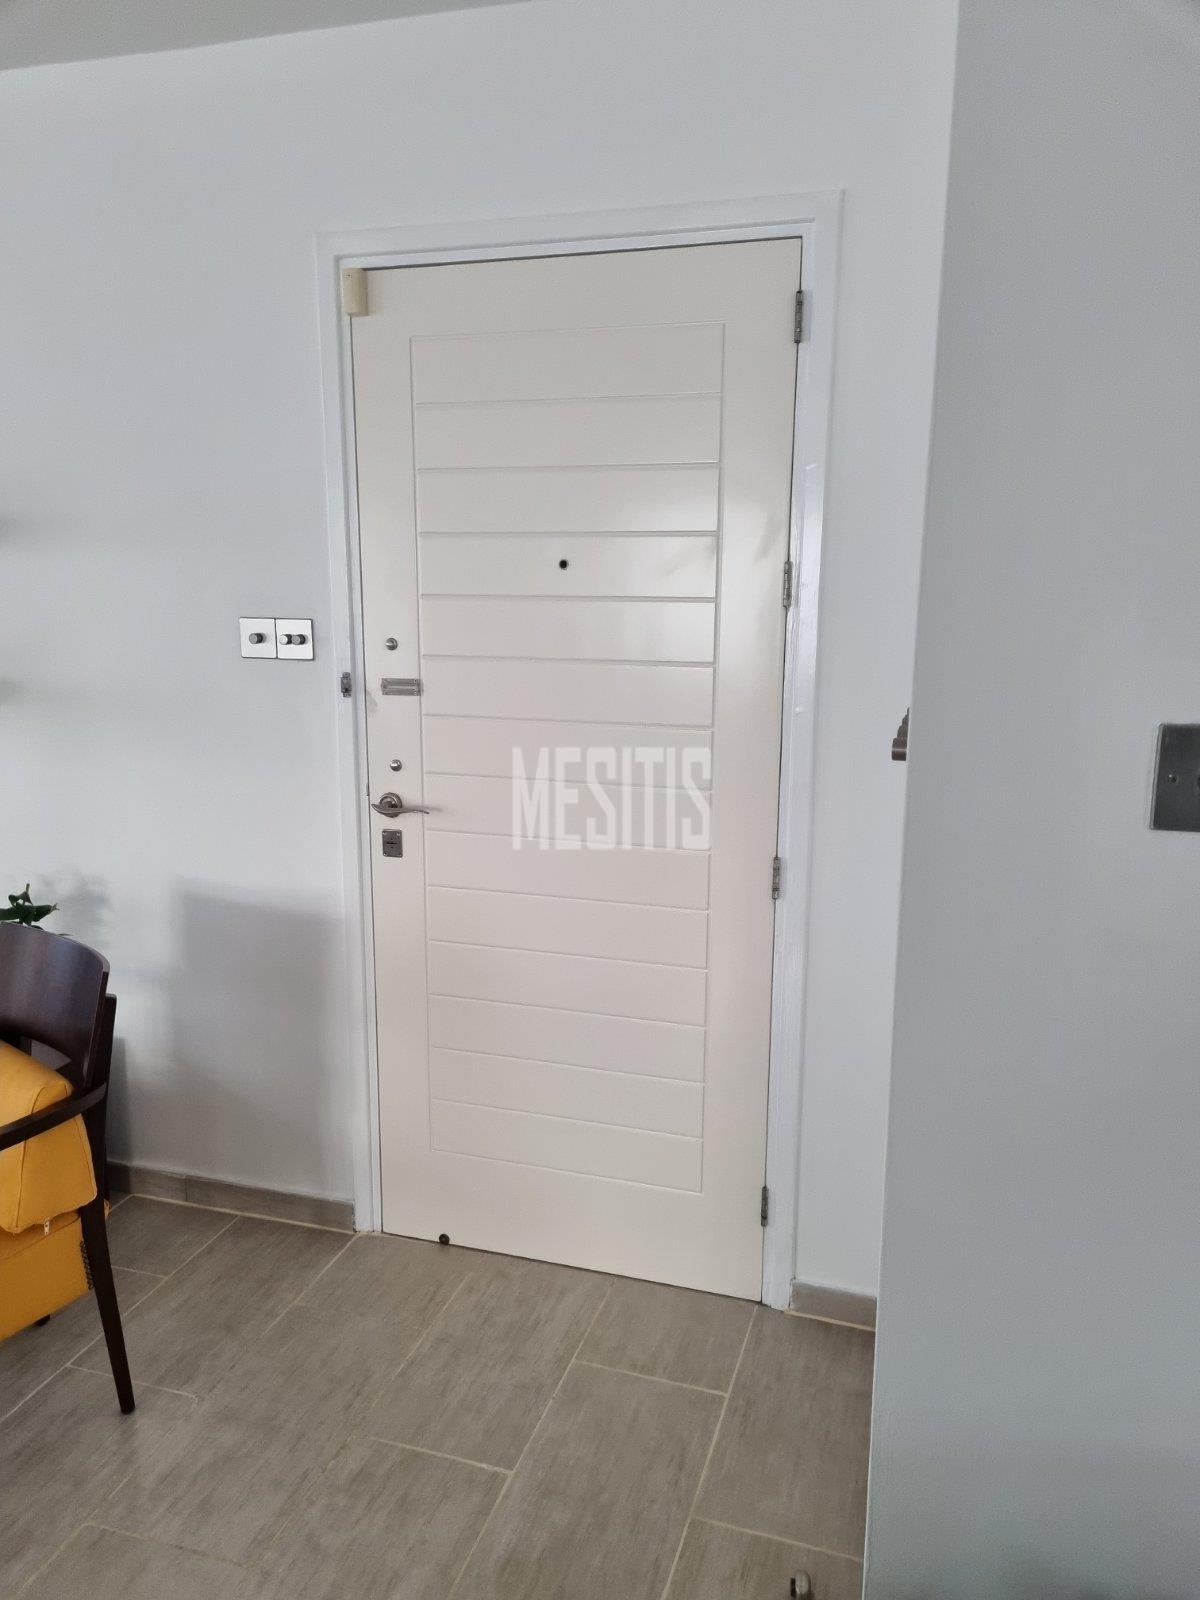 3 Βedroom Τop Floor Apartment For Sale In A Prime Location With Large Spaces And Incredible Aesthetics Αnd Views To All Of Nicosia #30861-9